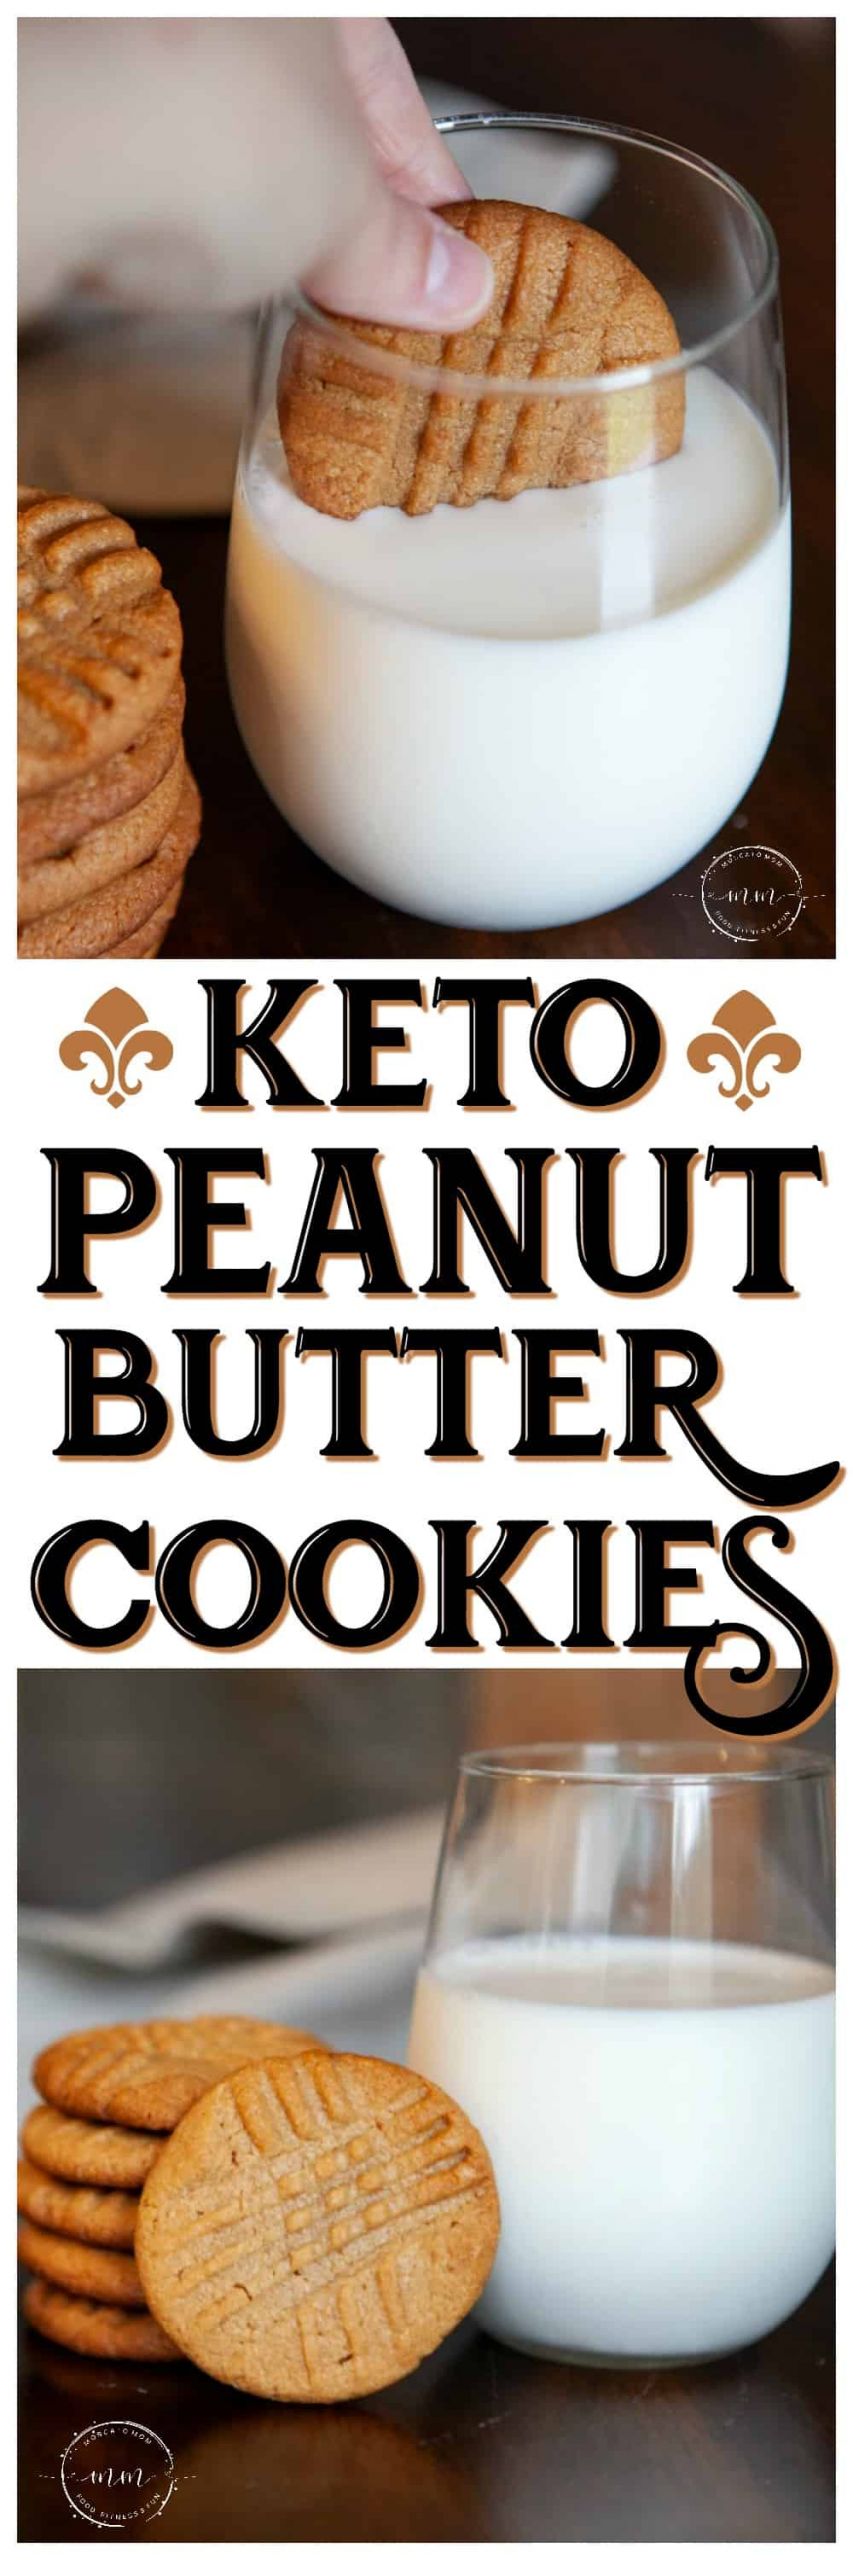 Keto Dessert Easy 3 Ingredients Cookies
 Easy Three Ingre nt Keto Peanut Butter Cookies